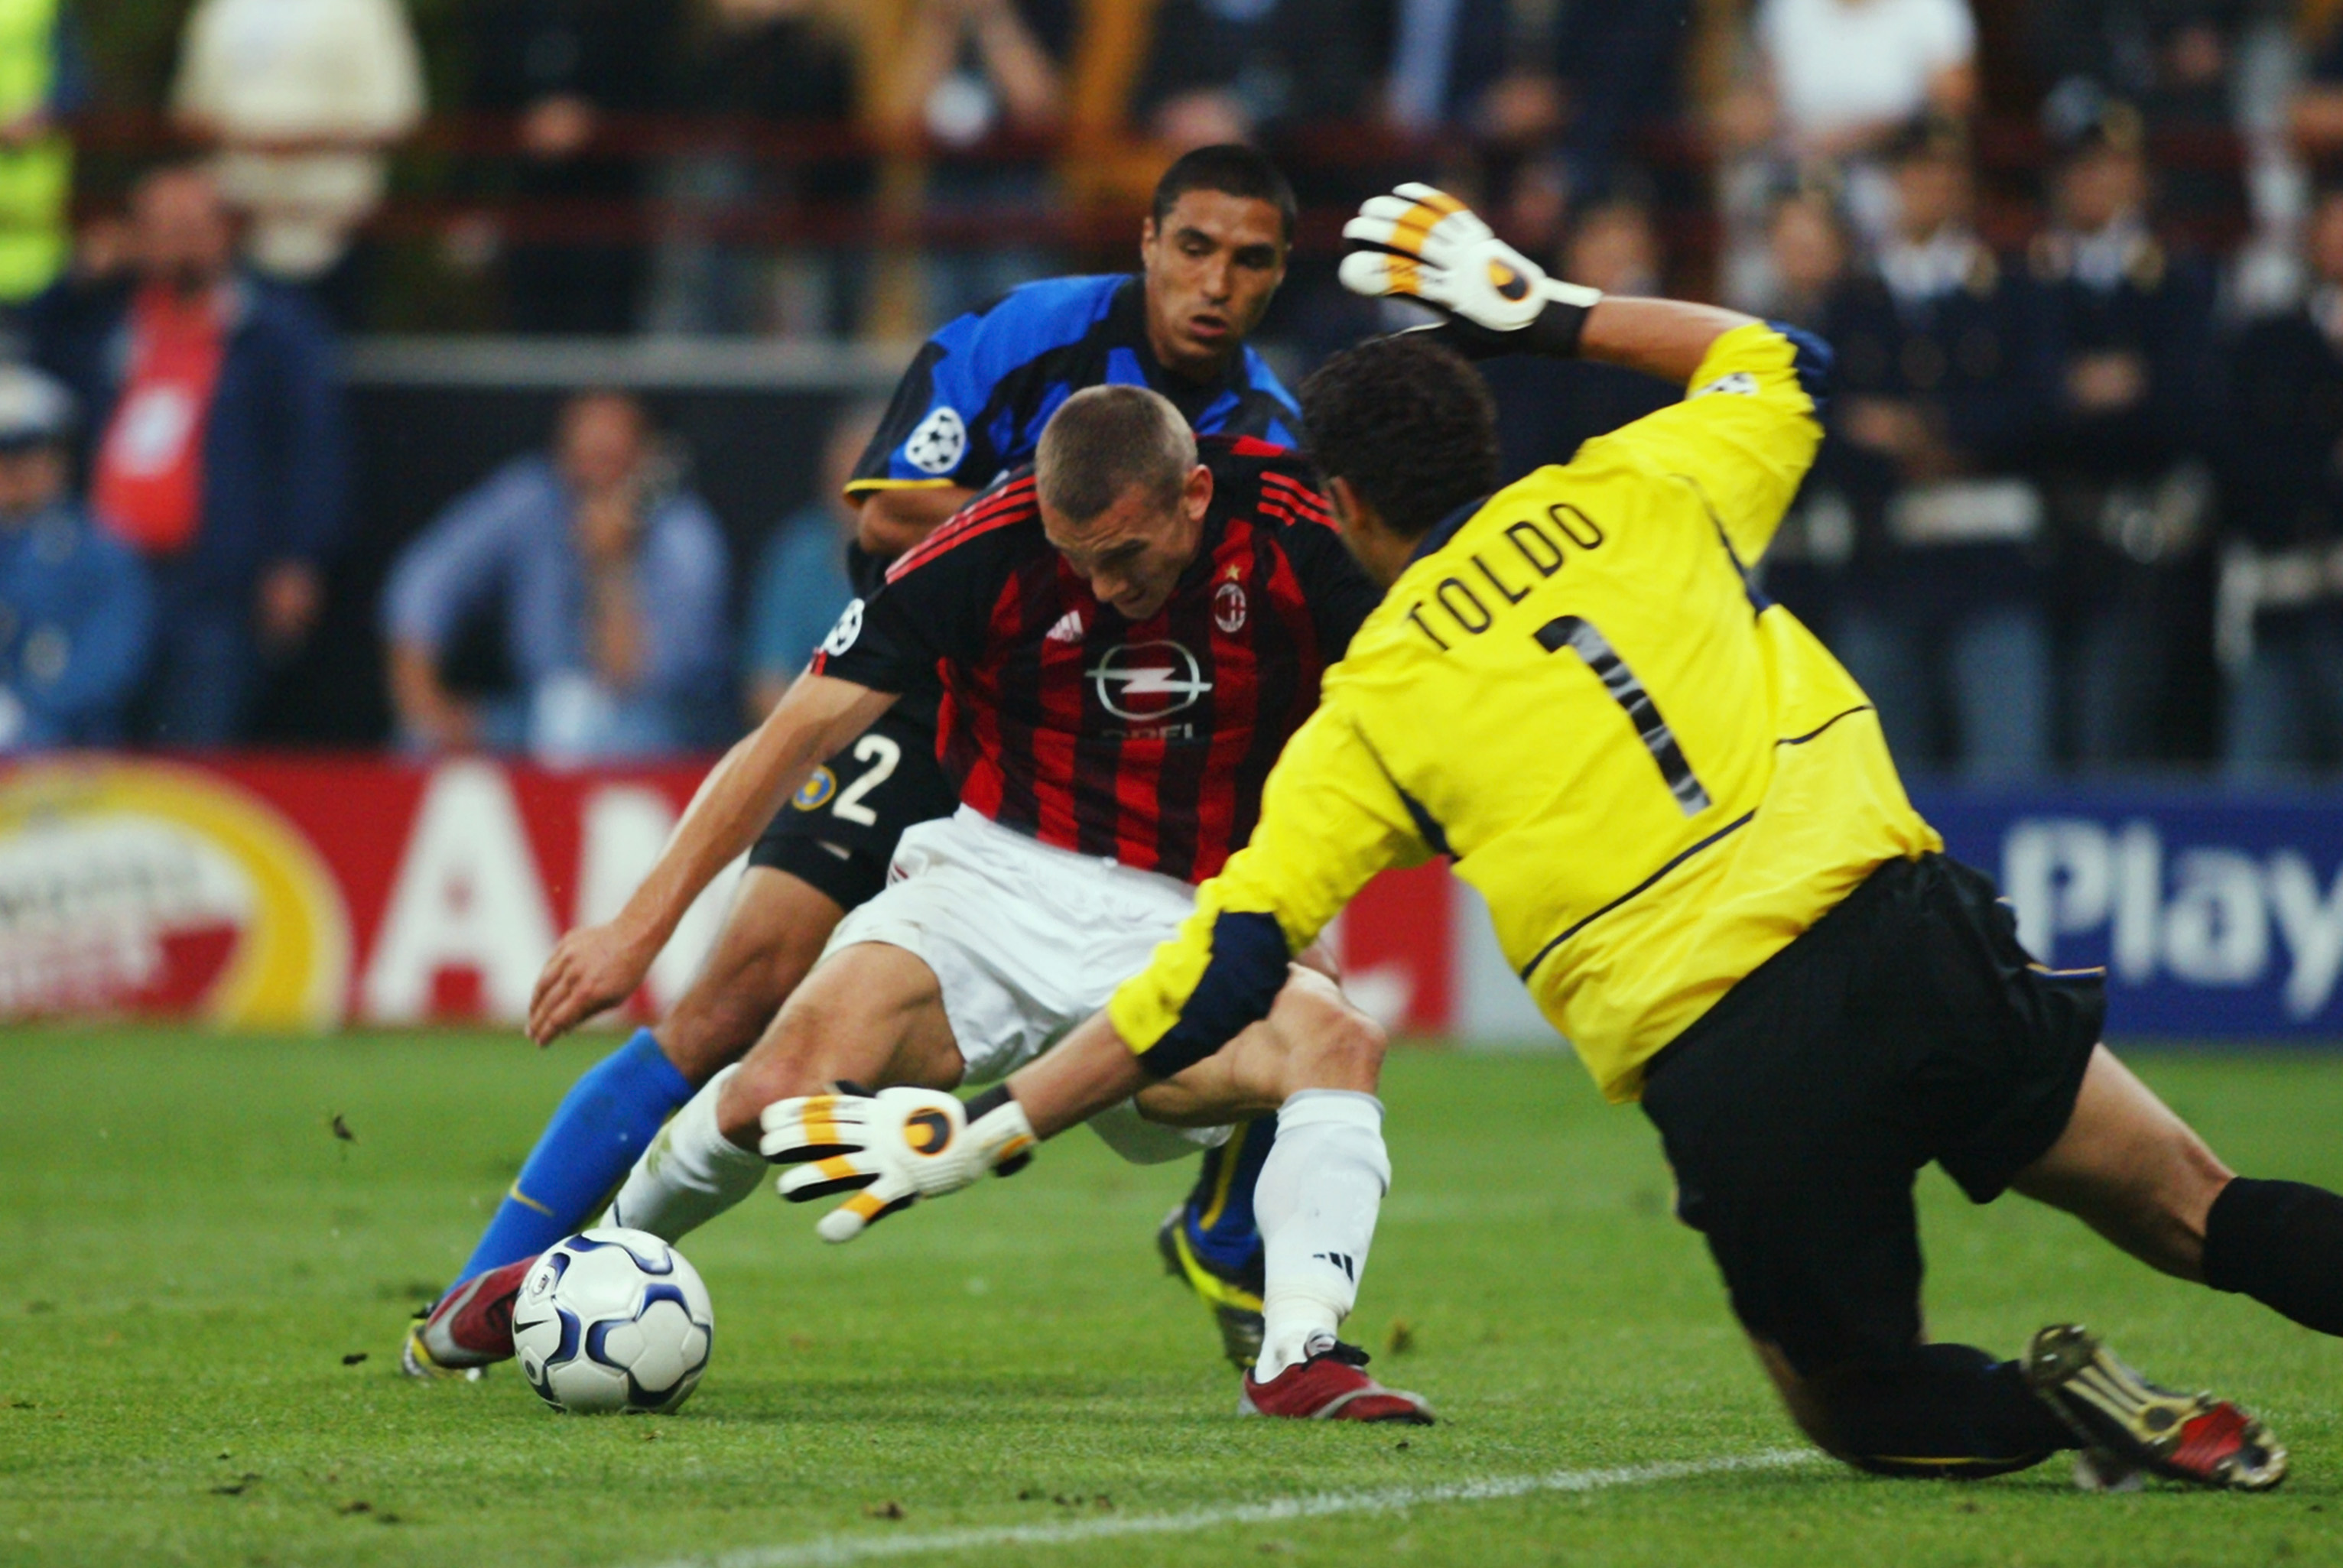 Inter consolida o domínio recente no clássico com uma goleada histórica  sobre o Milan 